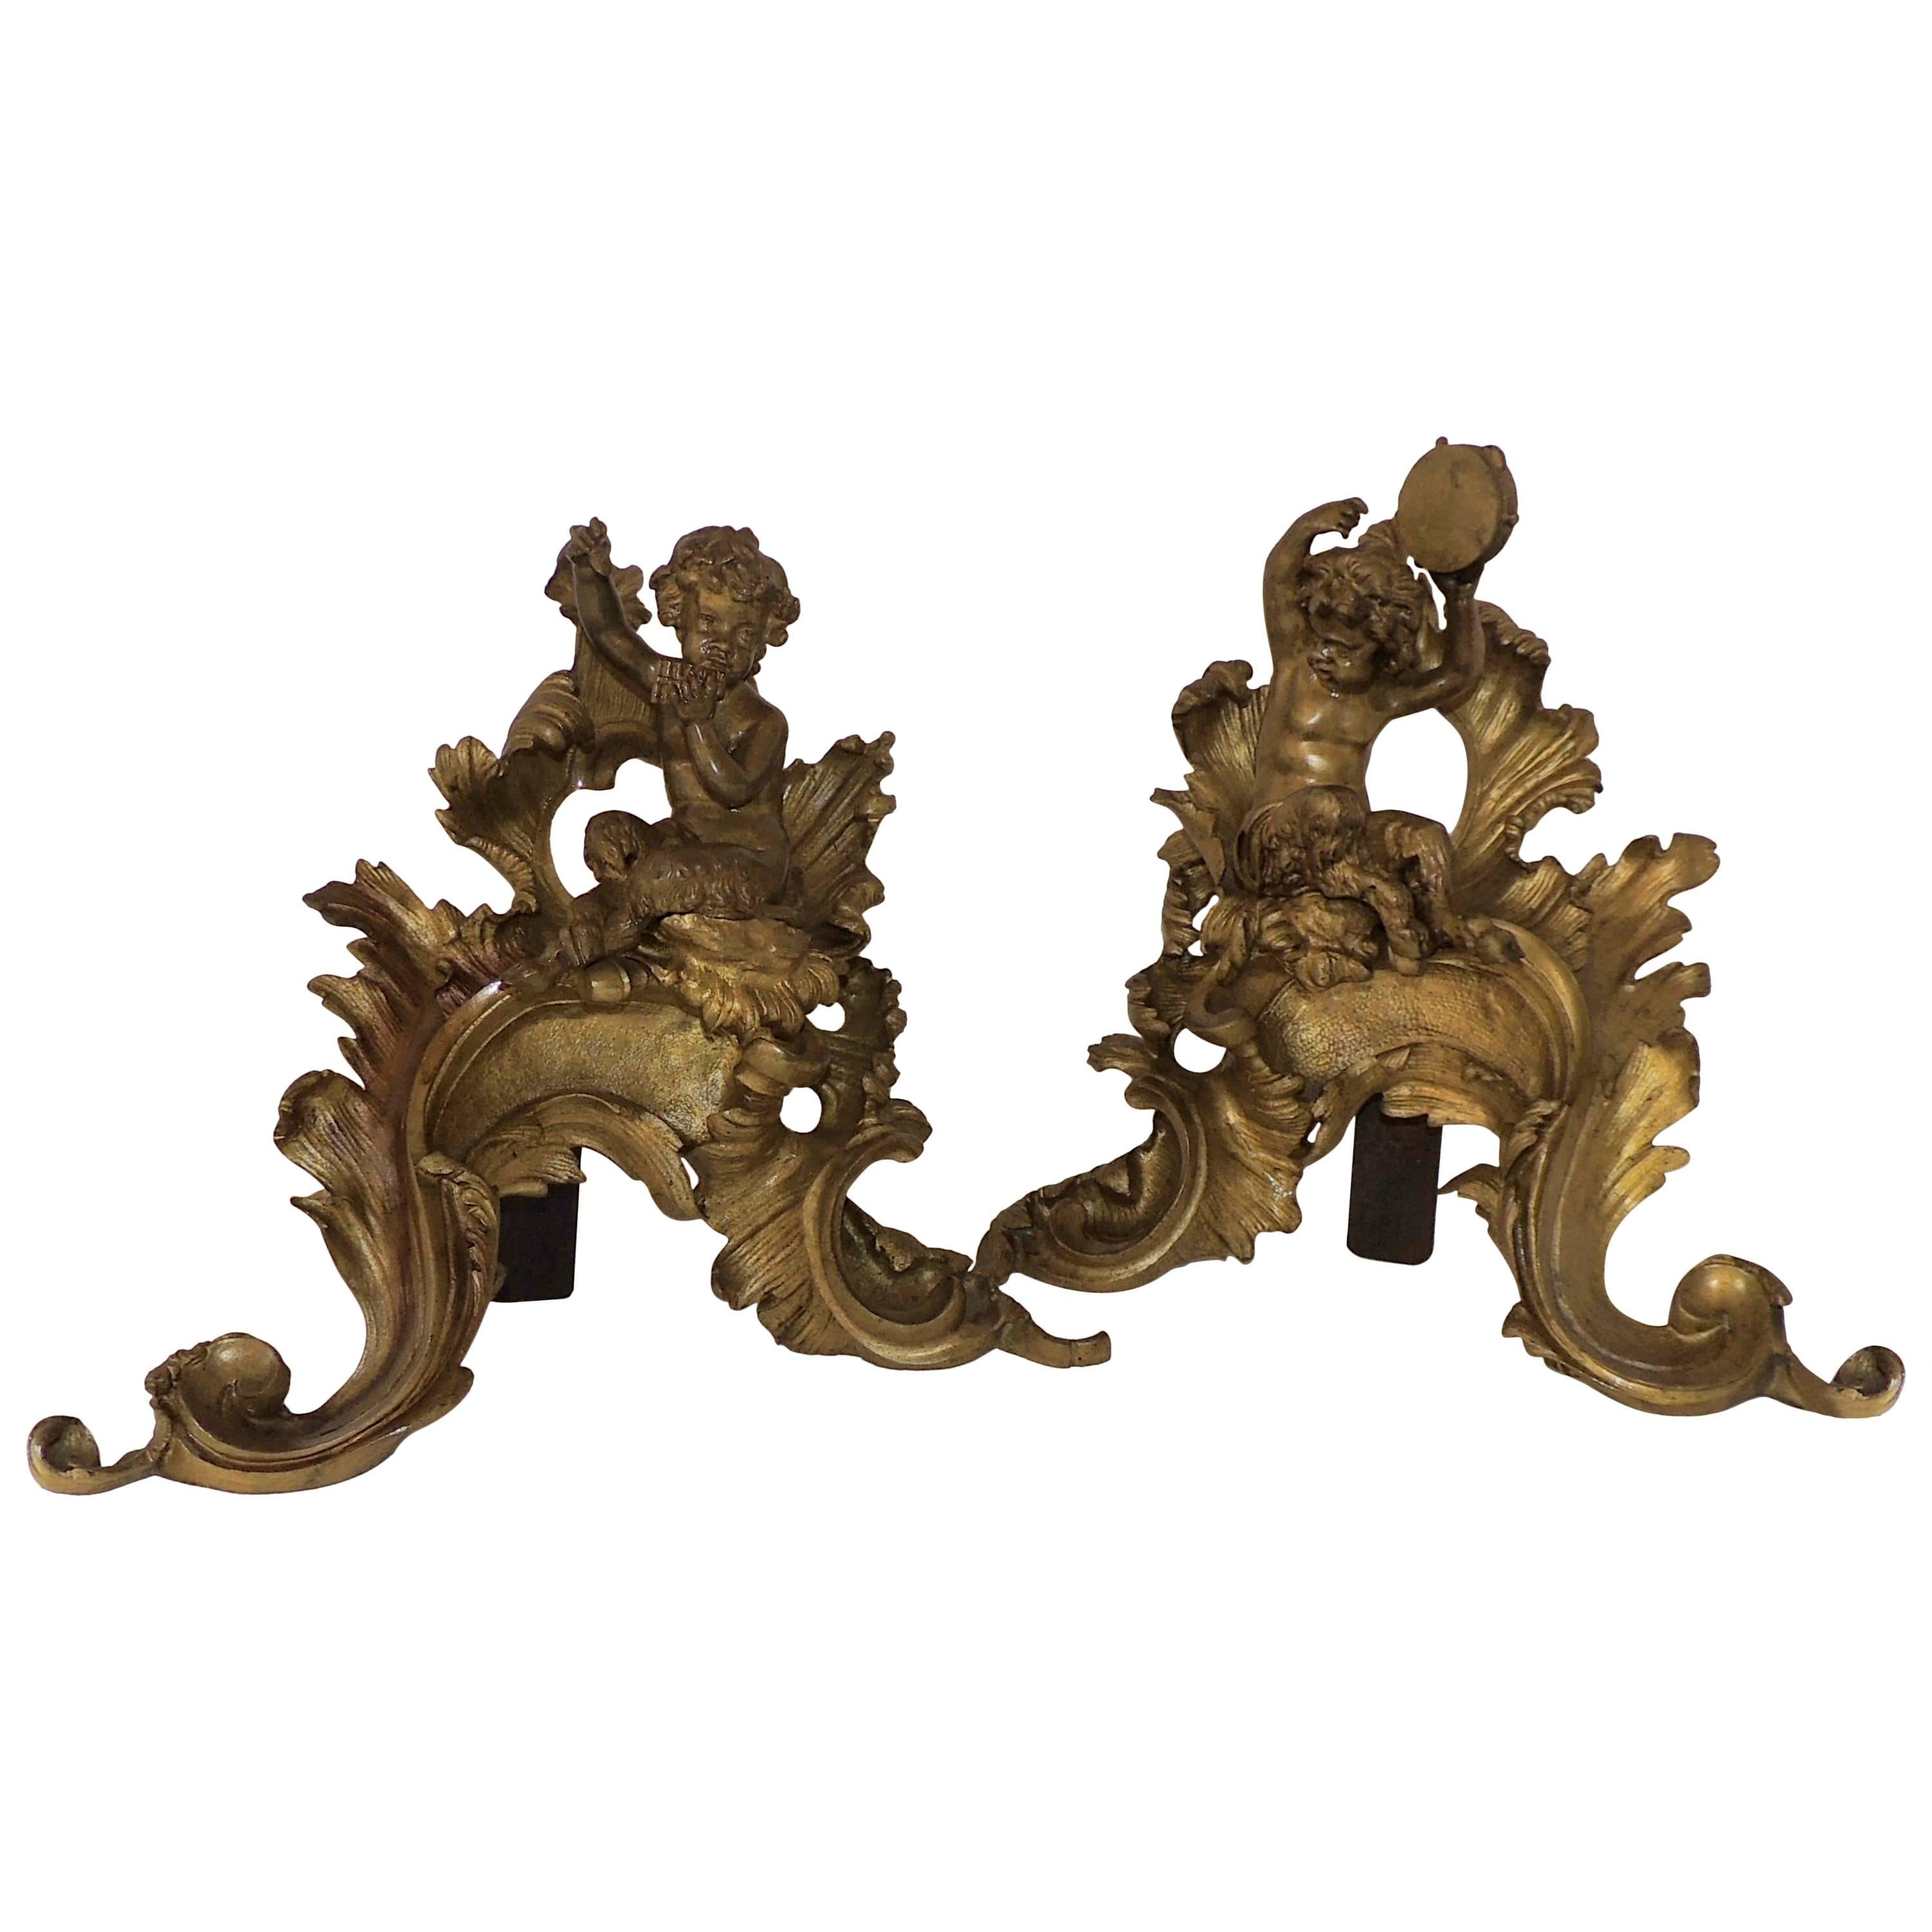 Merveilleux chenets de cheminée français en bronze doré représentant des chérubins et des putti pour cheminée